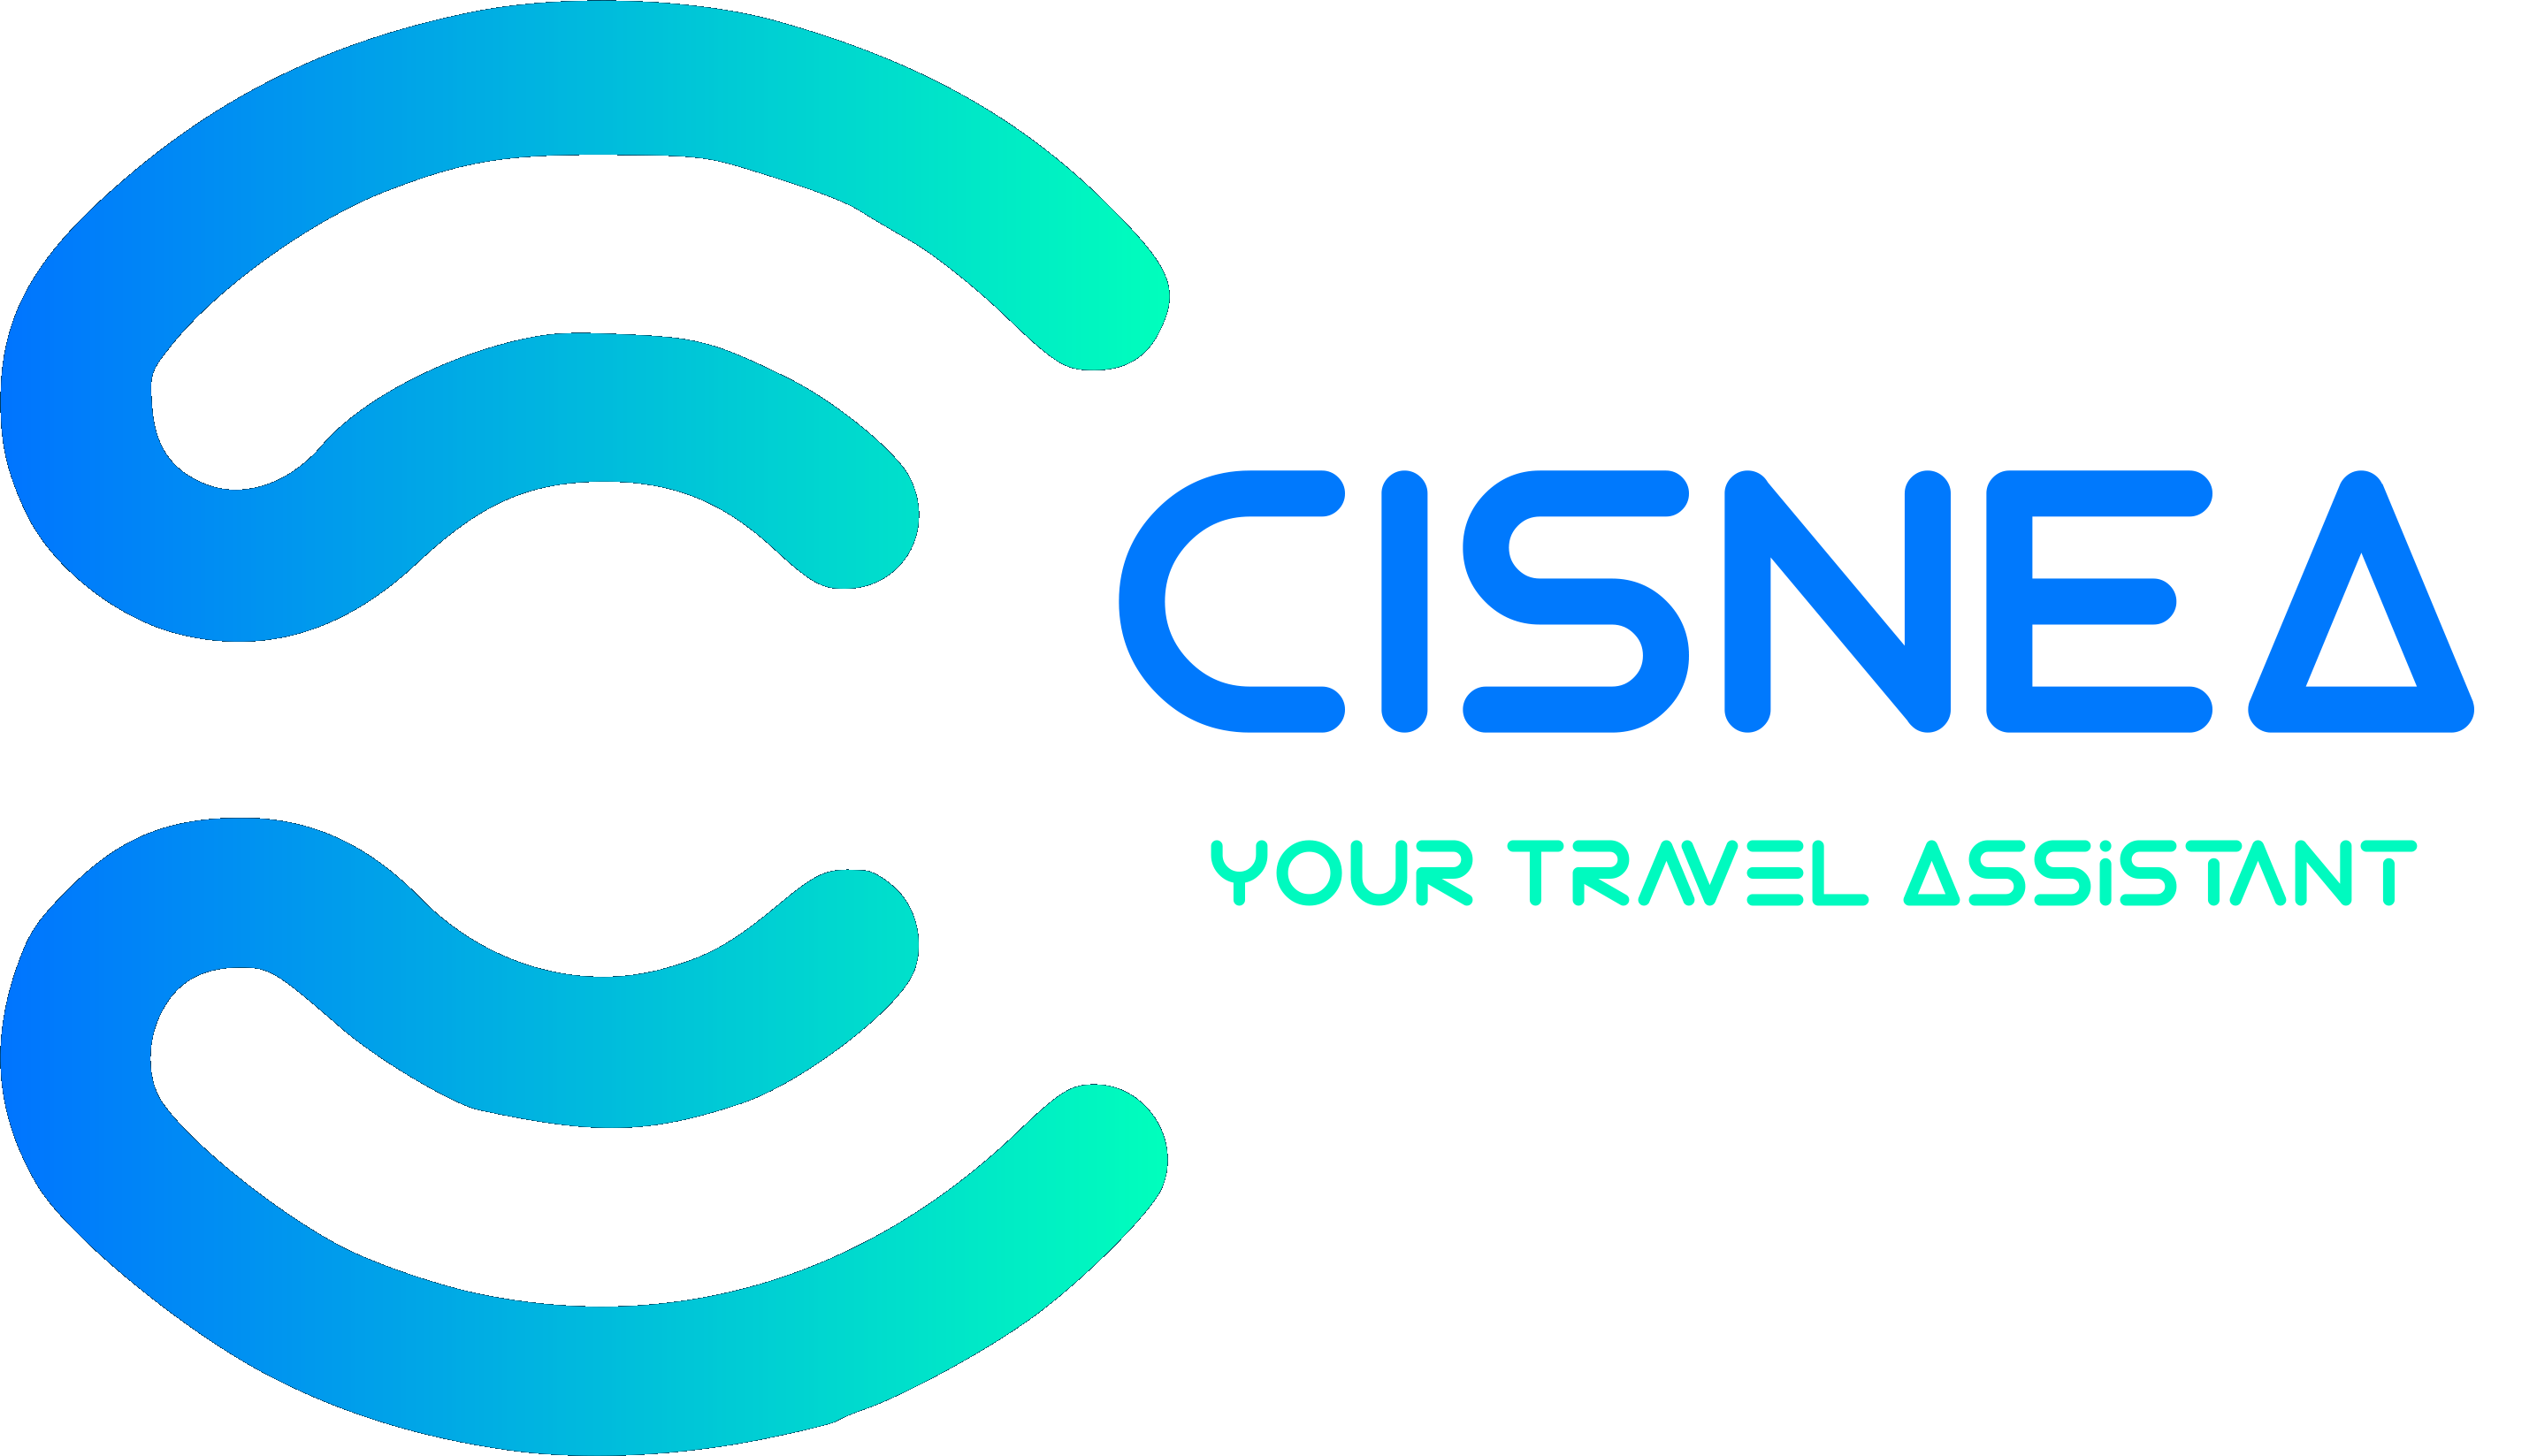 Features team - Cisnea